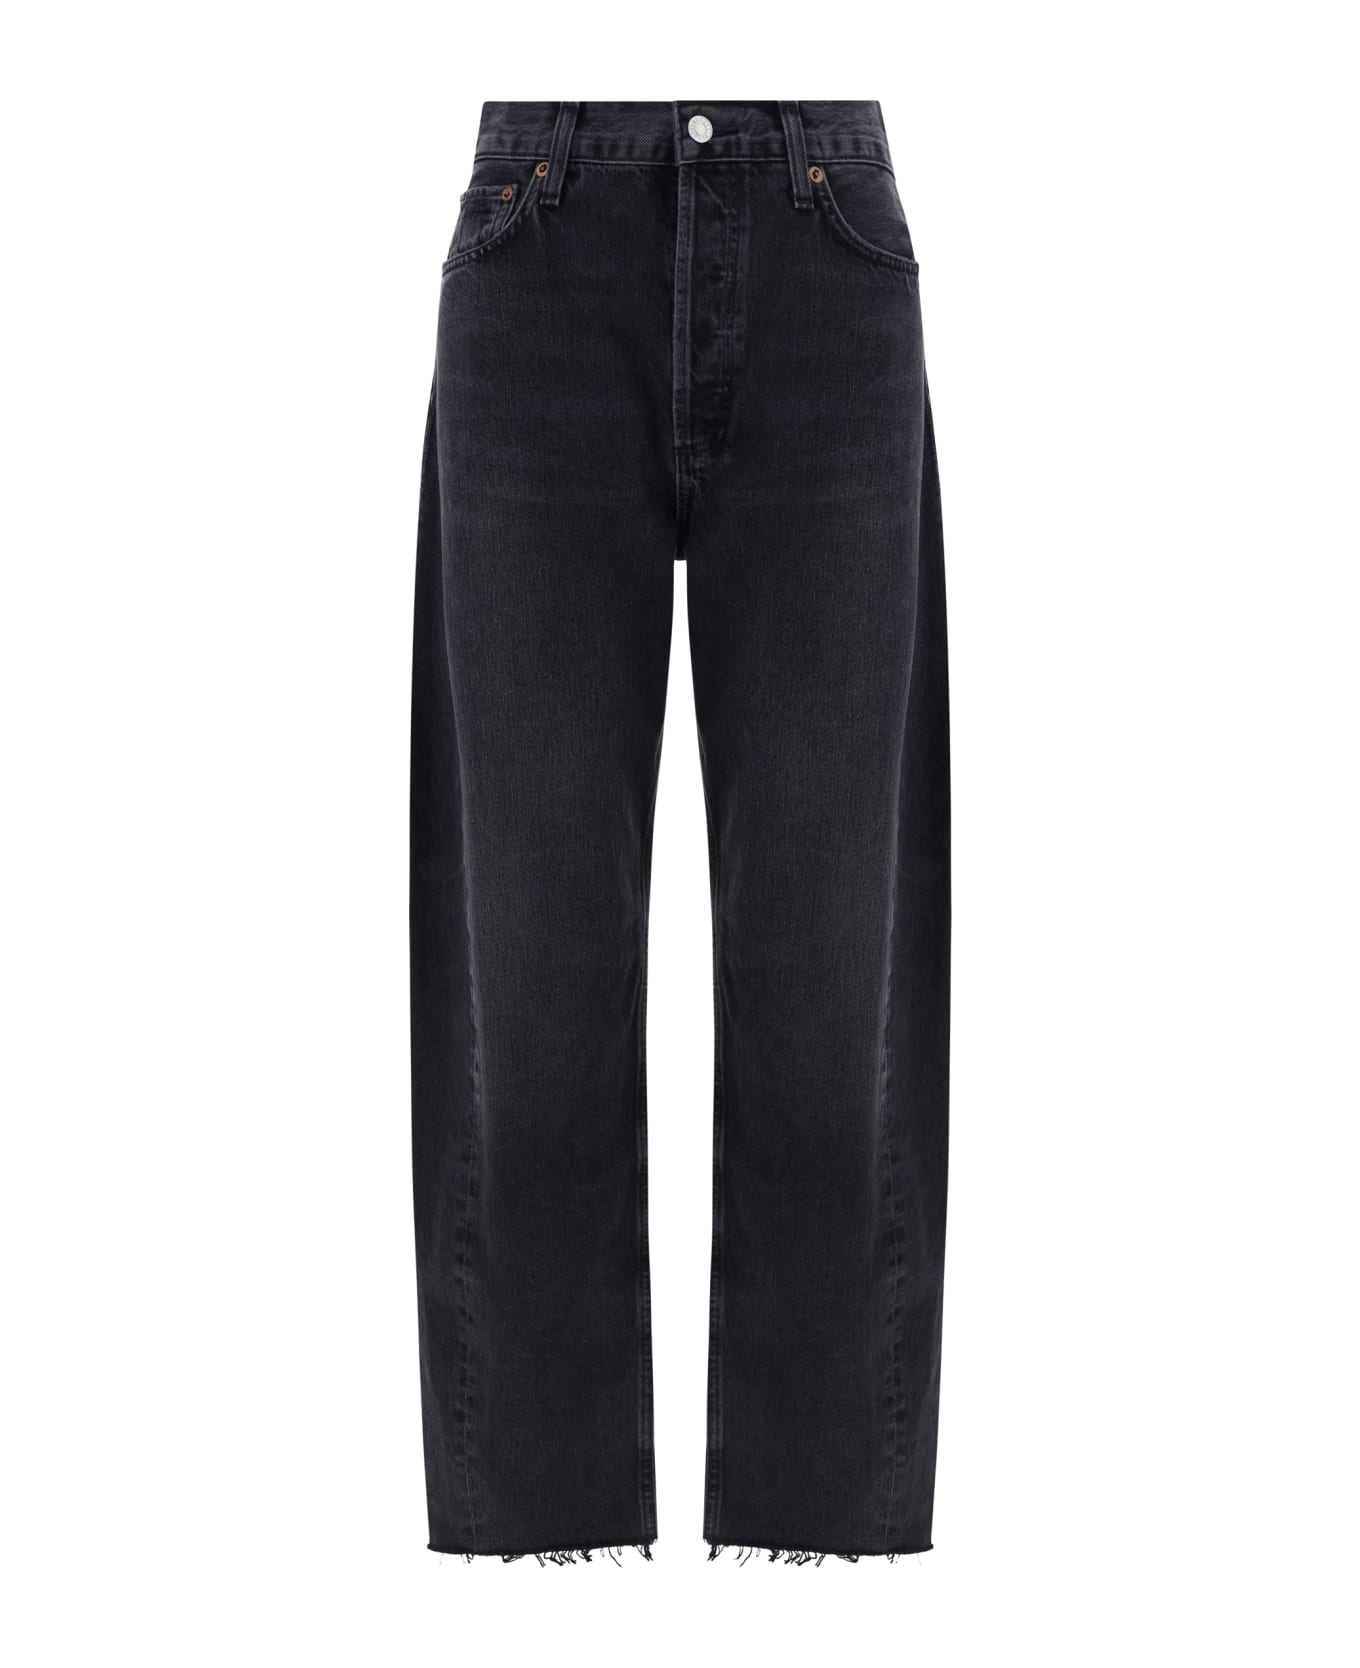 AGOLDE Luna Jeans - Possess (washed Black)